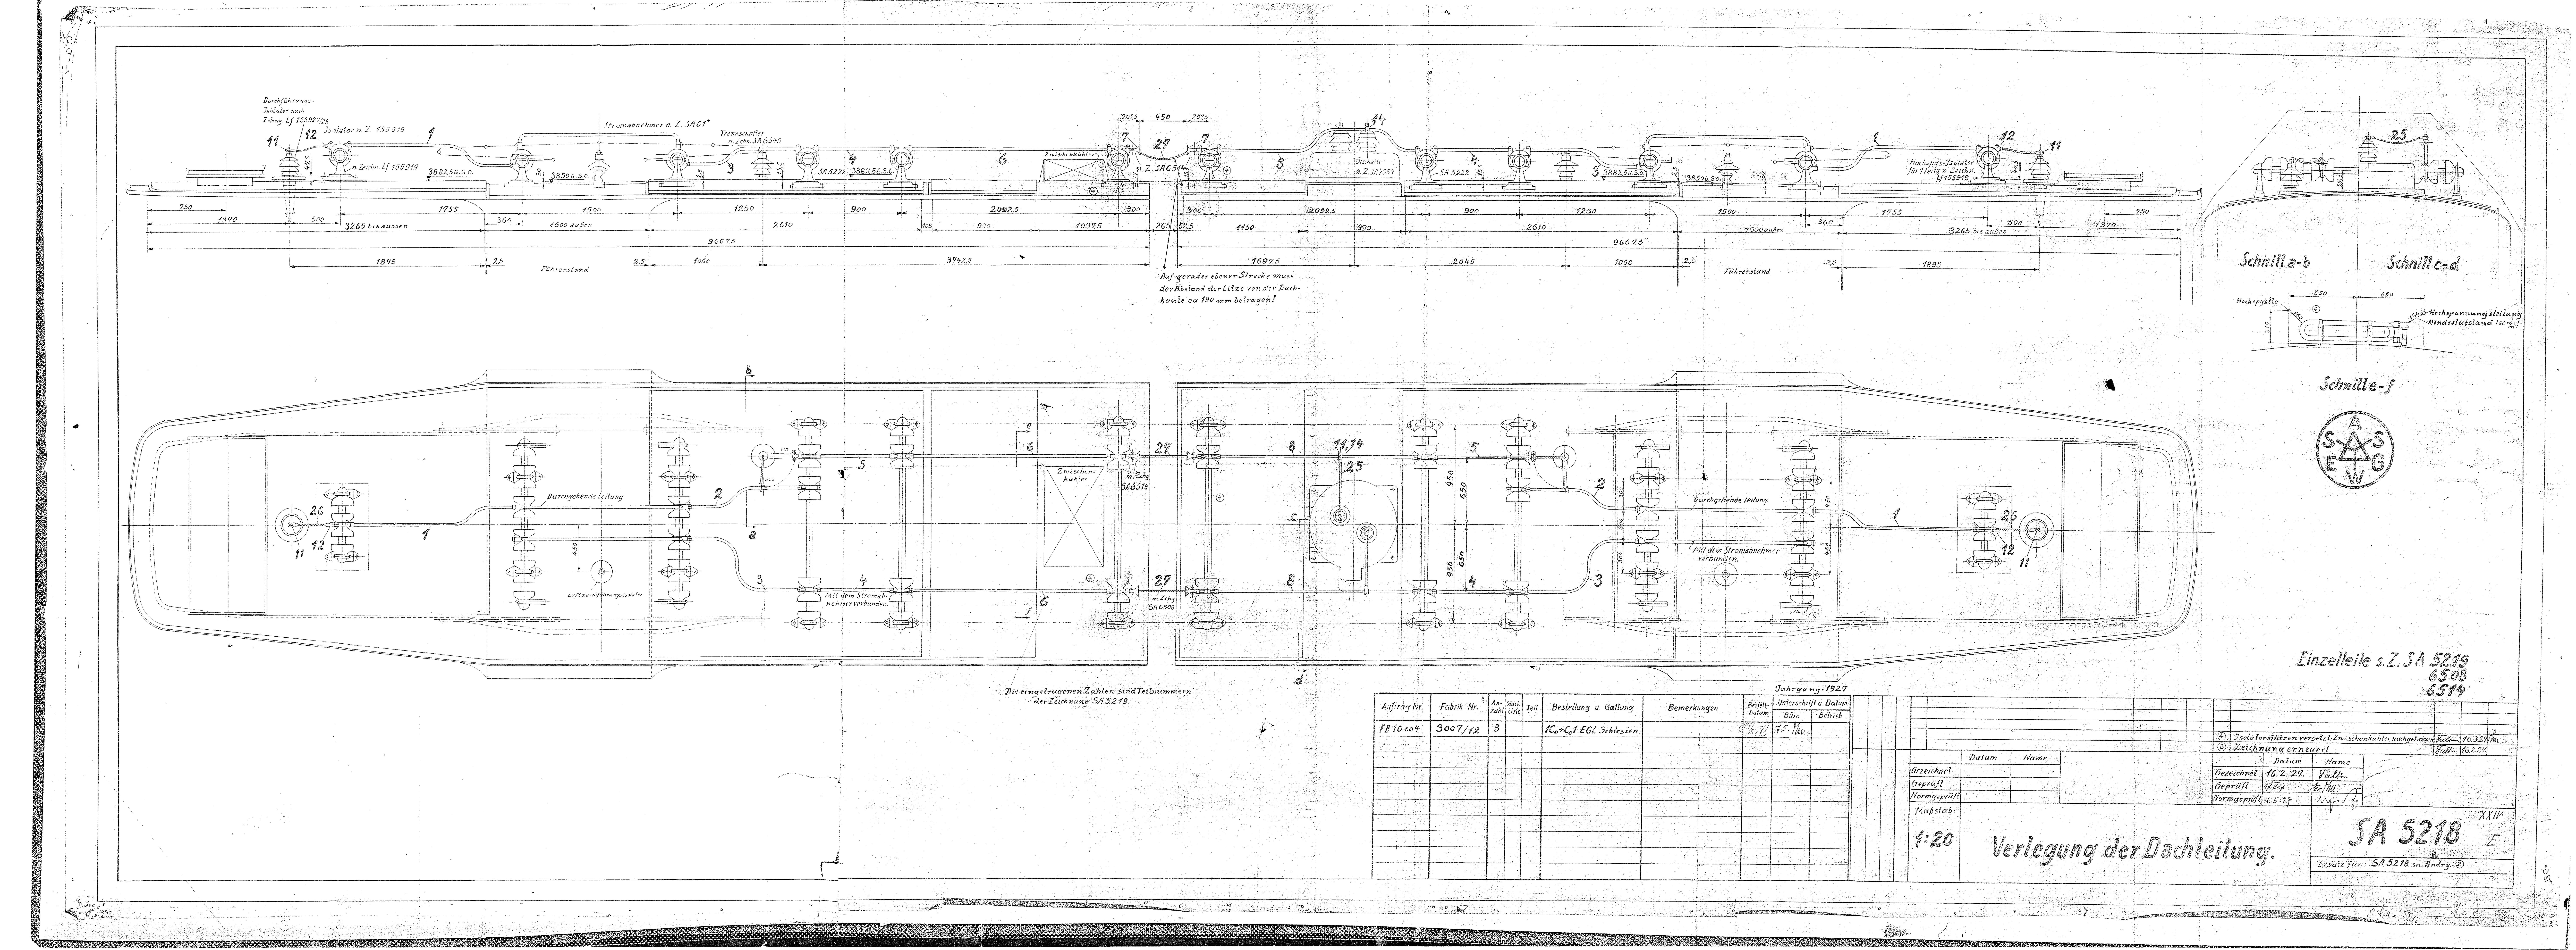 Konstruktionszeichnung der elektrischen Lokomotive E 95, Detailzeichnung Verlegung der Dachleitung. 1926. Bauart der Lokomotive: 1Co+Co1. (Verkehrsmuseum Dresden CC BY-NC-SA)